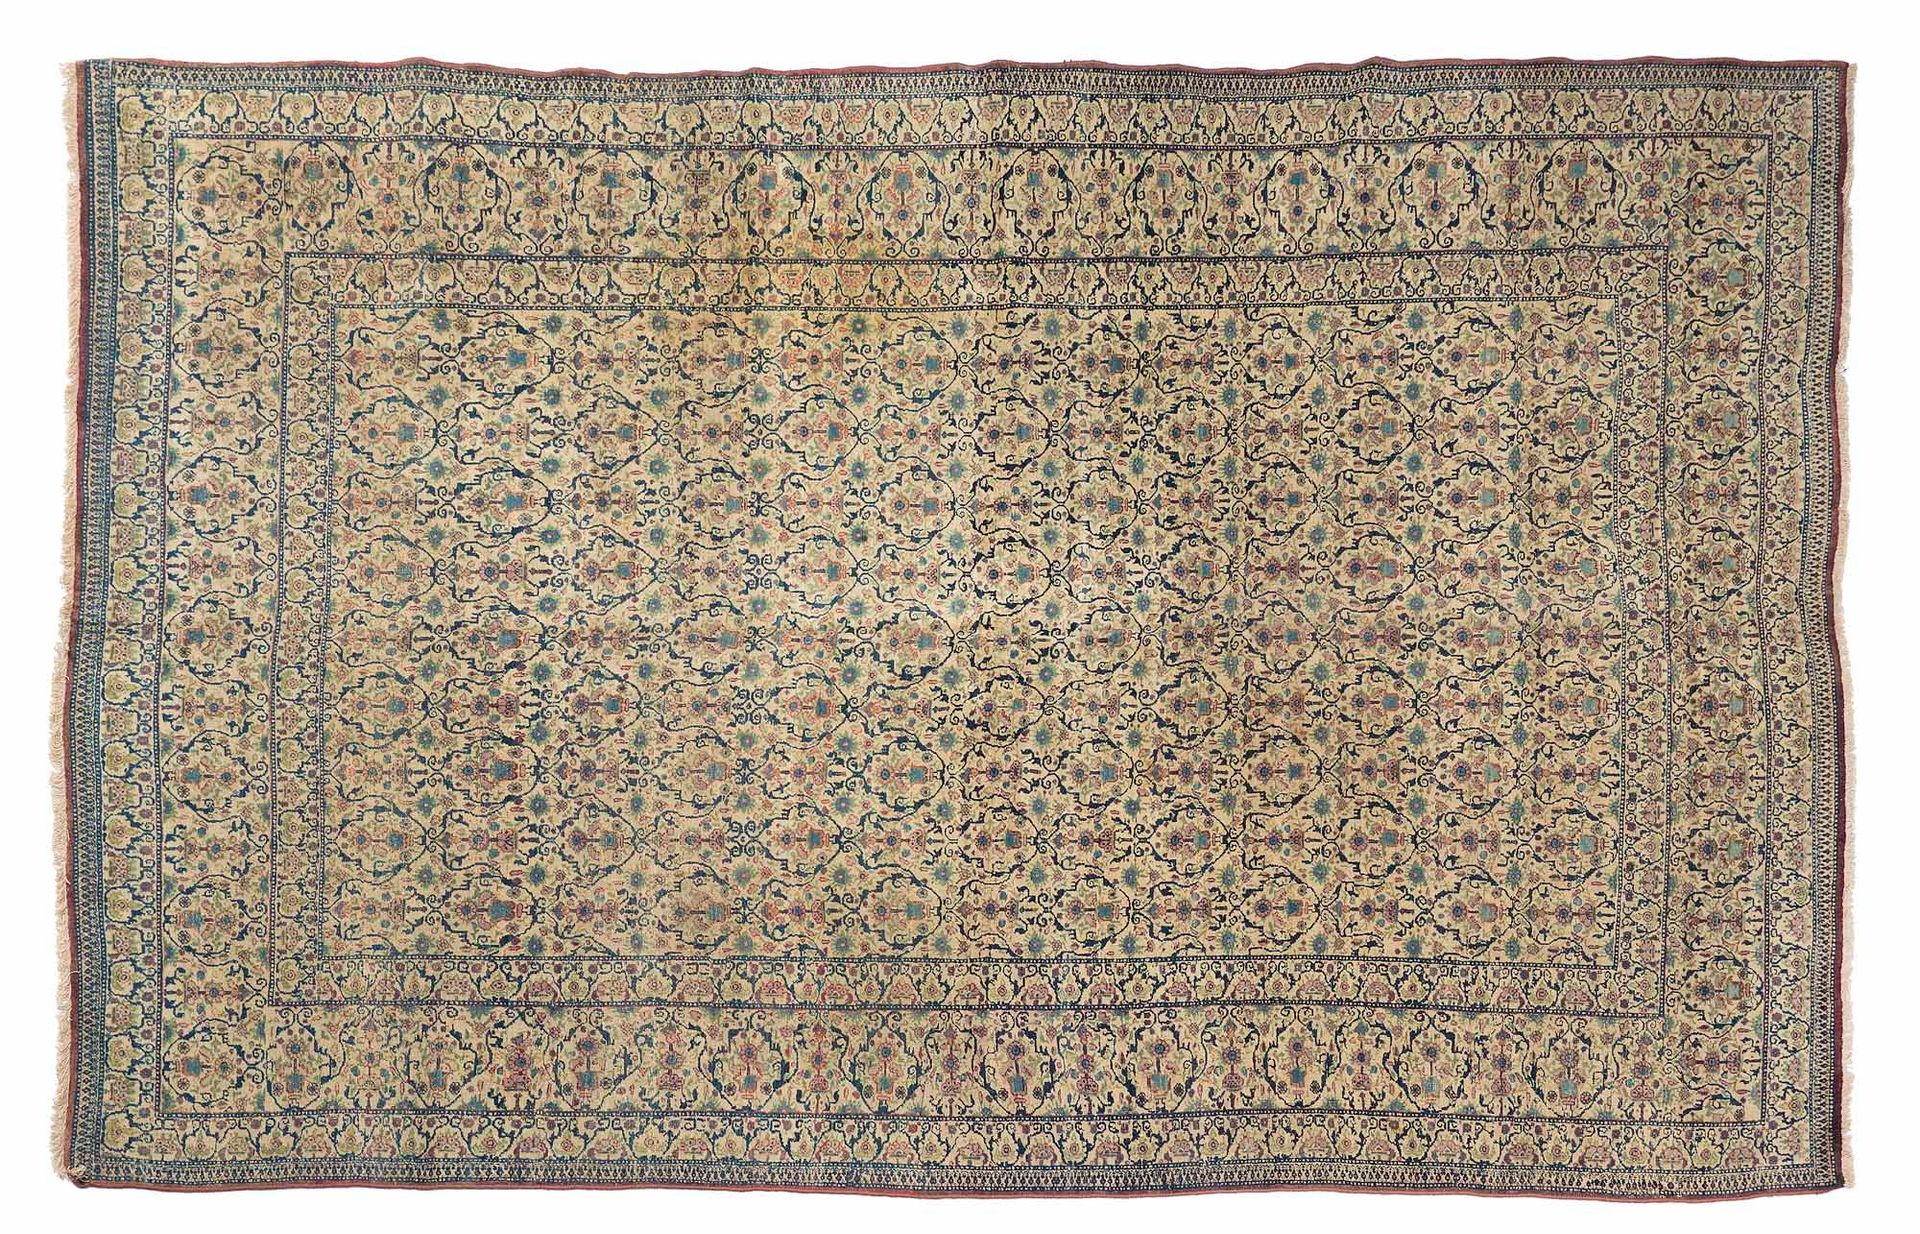 Null 德黑兰（波斯）地毯，19世纪末

尺寸：309 x 207厘米。

技术特点 : 羊毛天鹅绒，棉质底板。

地毯整体，包括场地、主边框和两个反边框，覆&hellip;